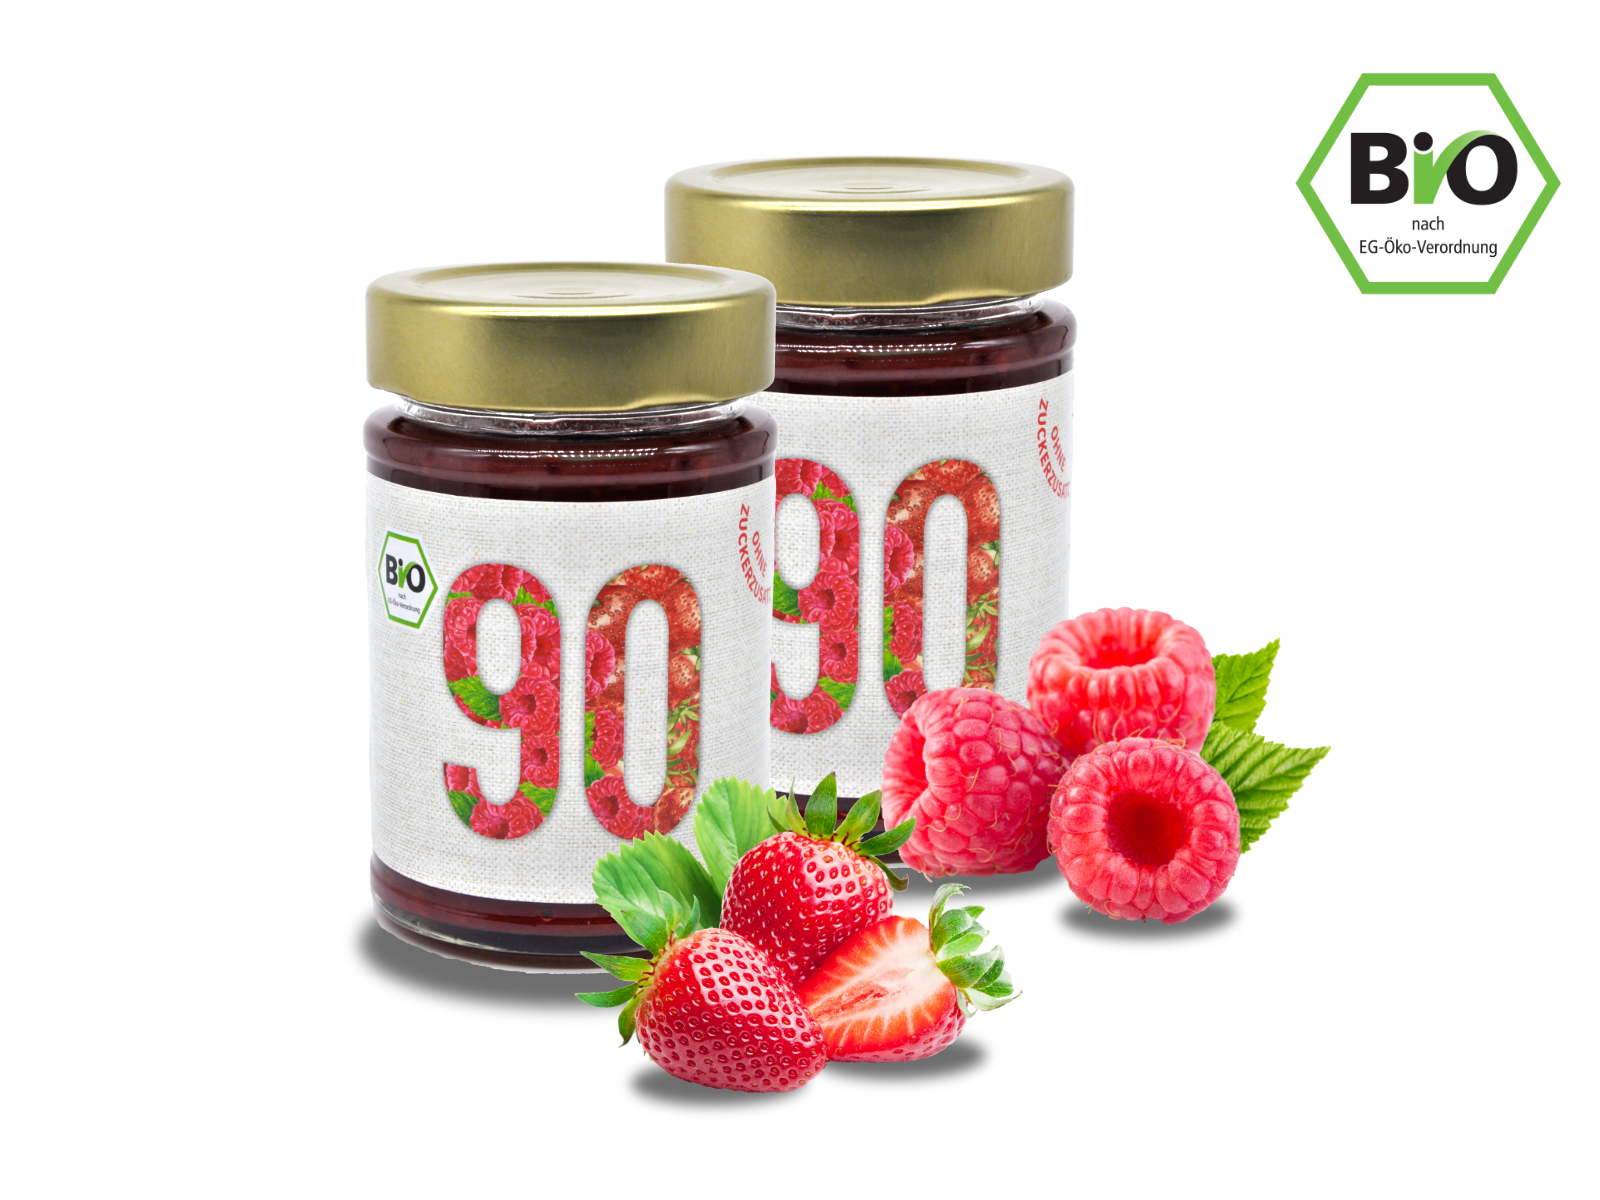 2x Sibani BIO 90% Fruchtaufstrich, Himbeere-Erdbeere, mit Bio-Erythrit, 180g